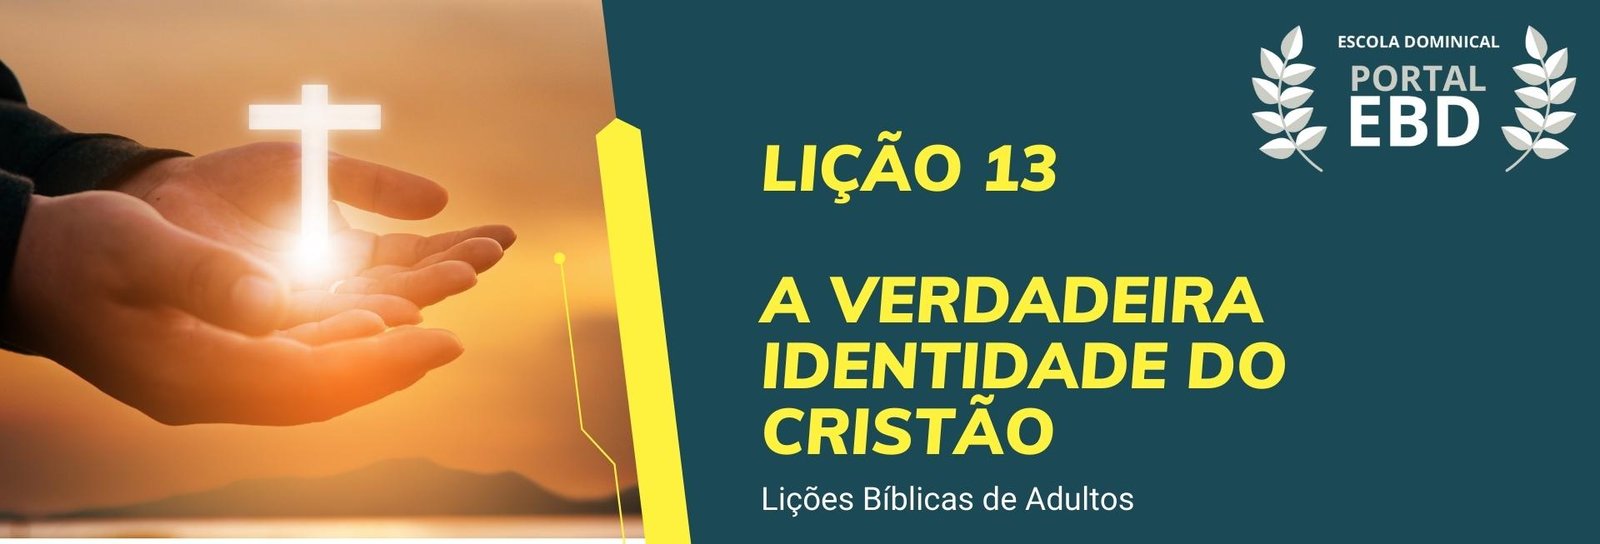 Lição 13 - A verdadeira identidade do cristão I